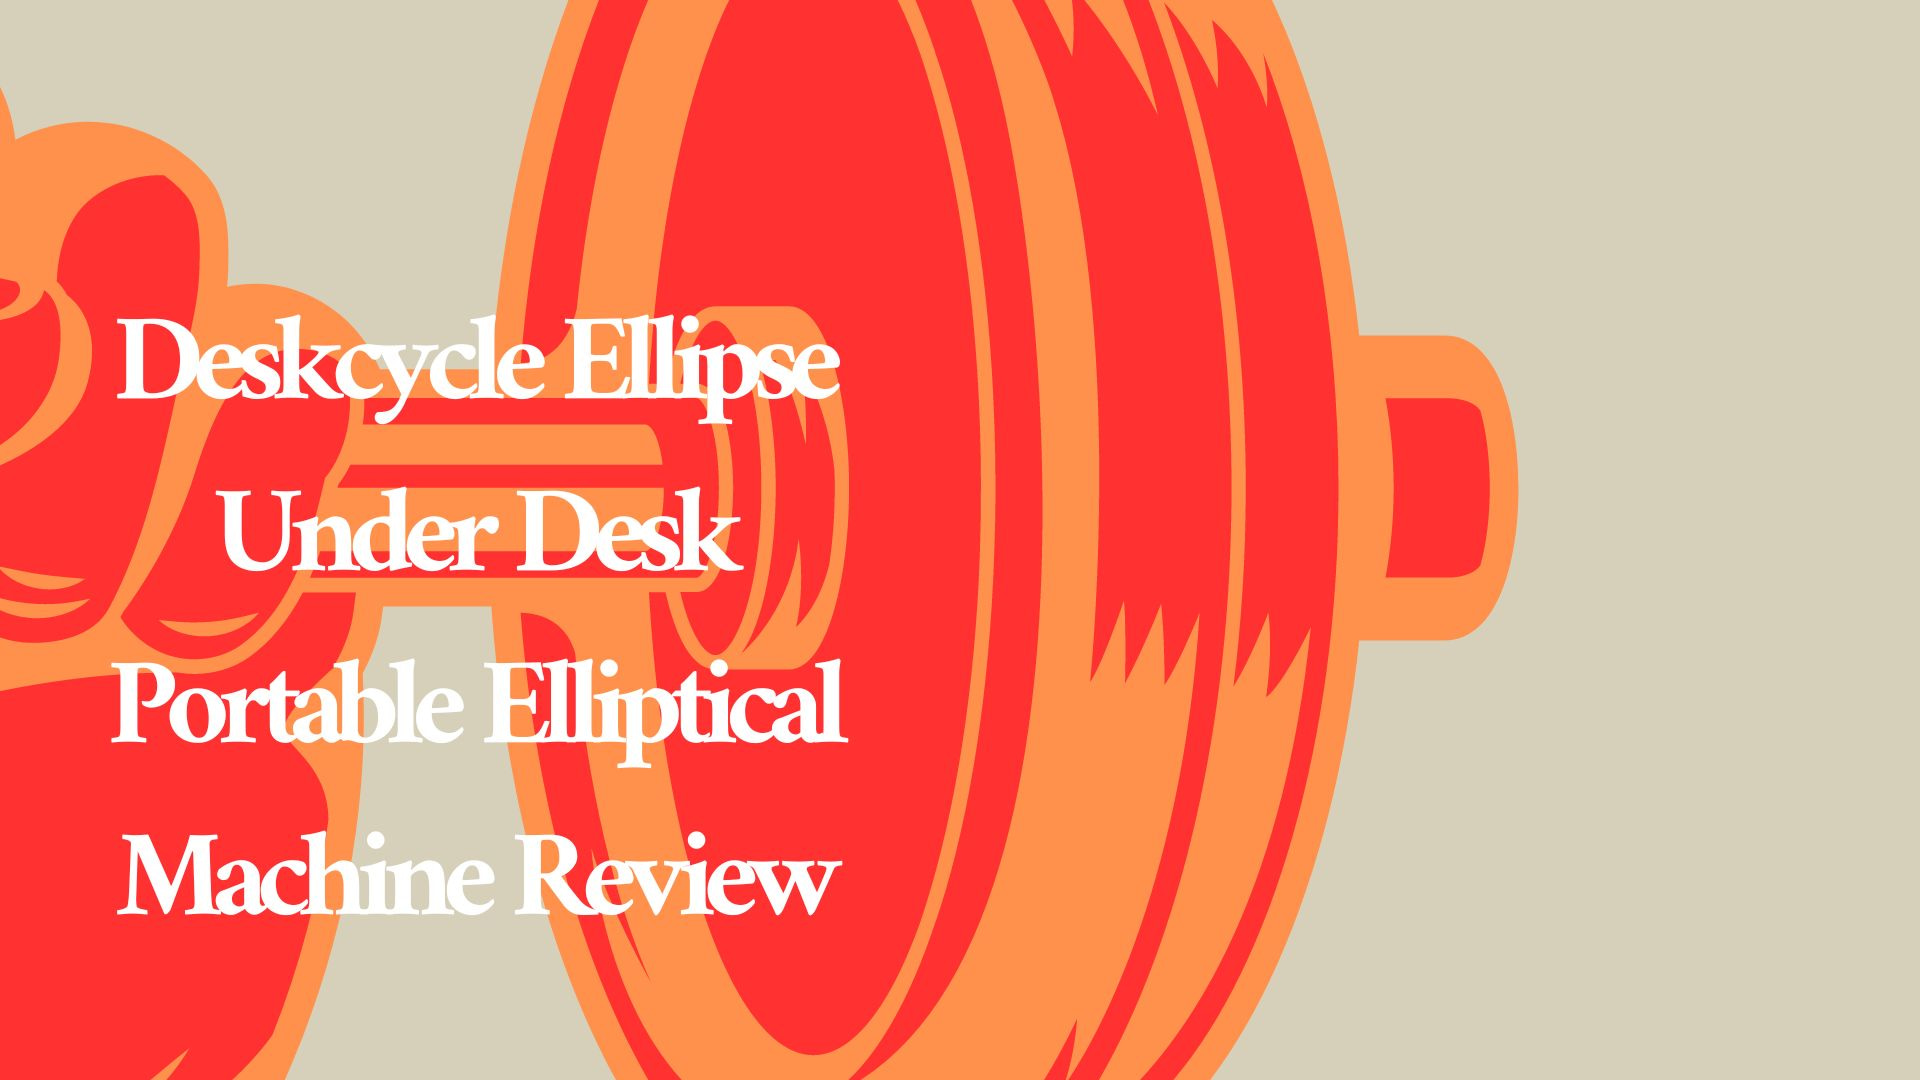 Deskcycle Ellipse Under Desk Portable Elliptical Machine Review